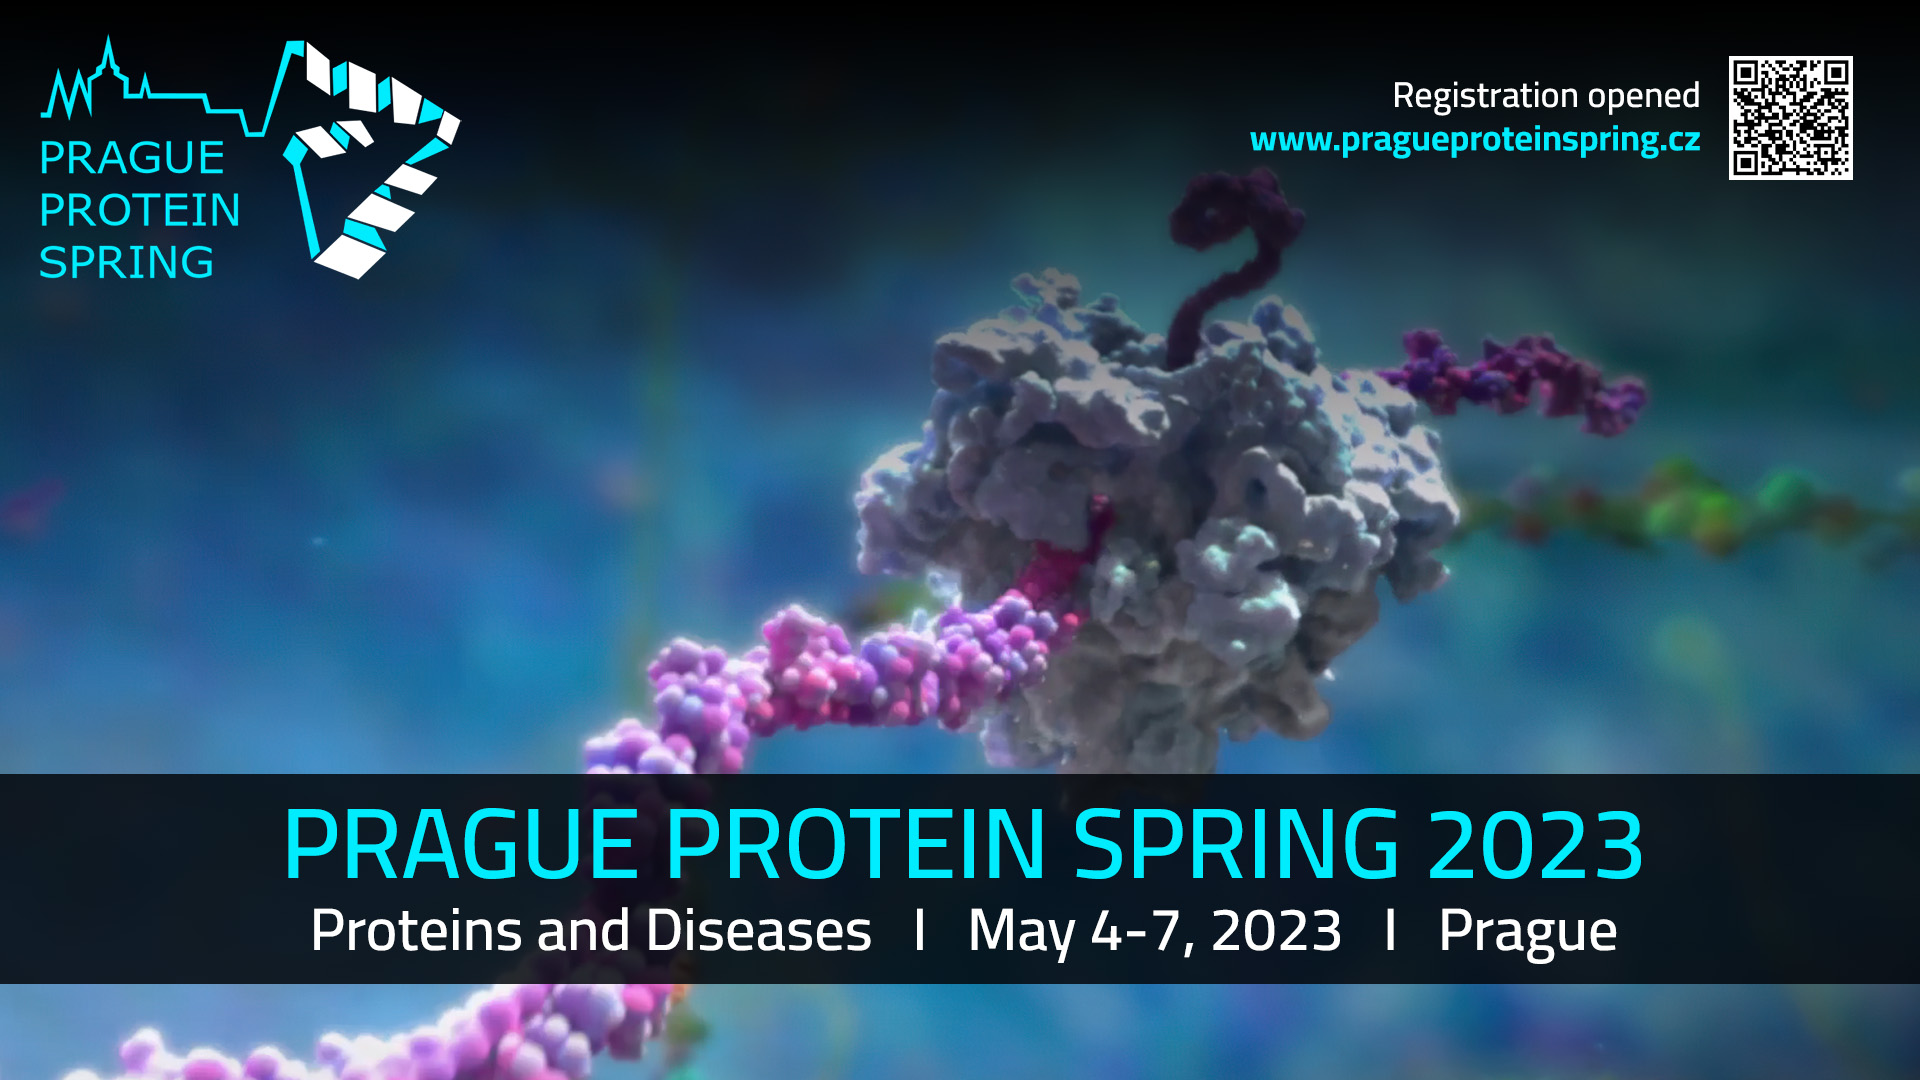 Prague Protein Spring 2023